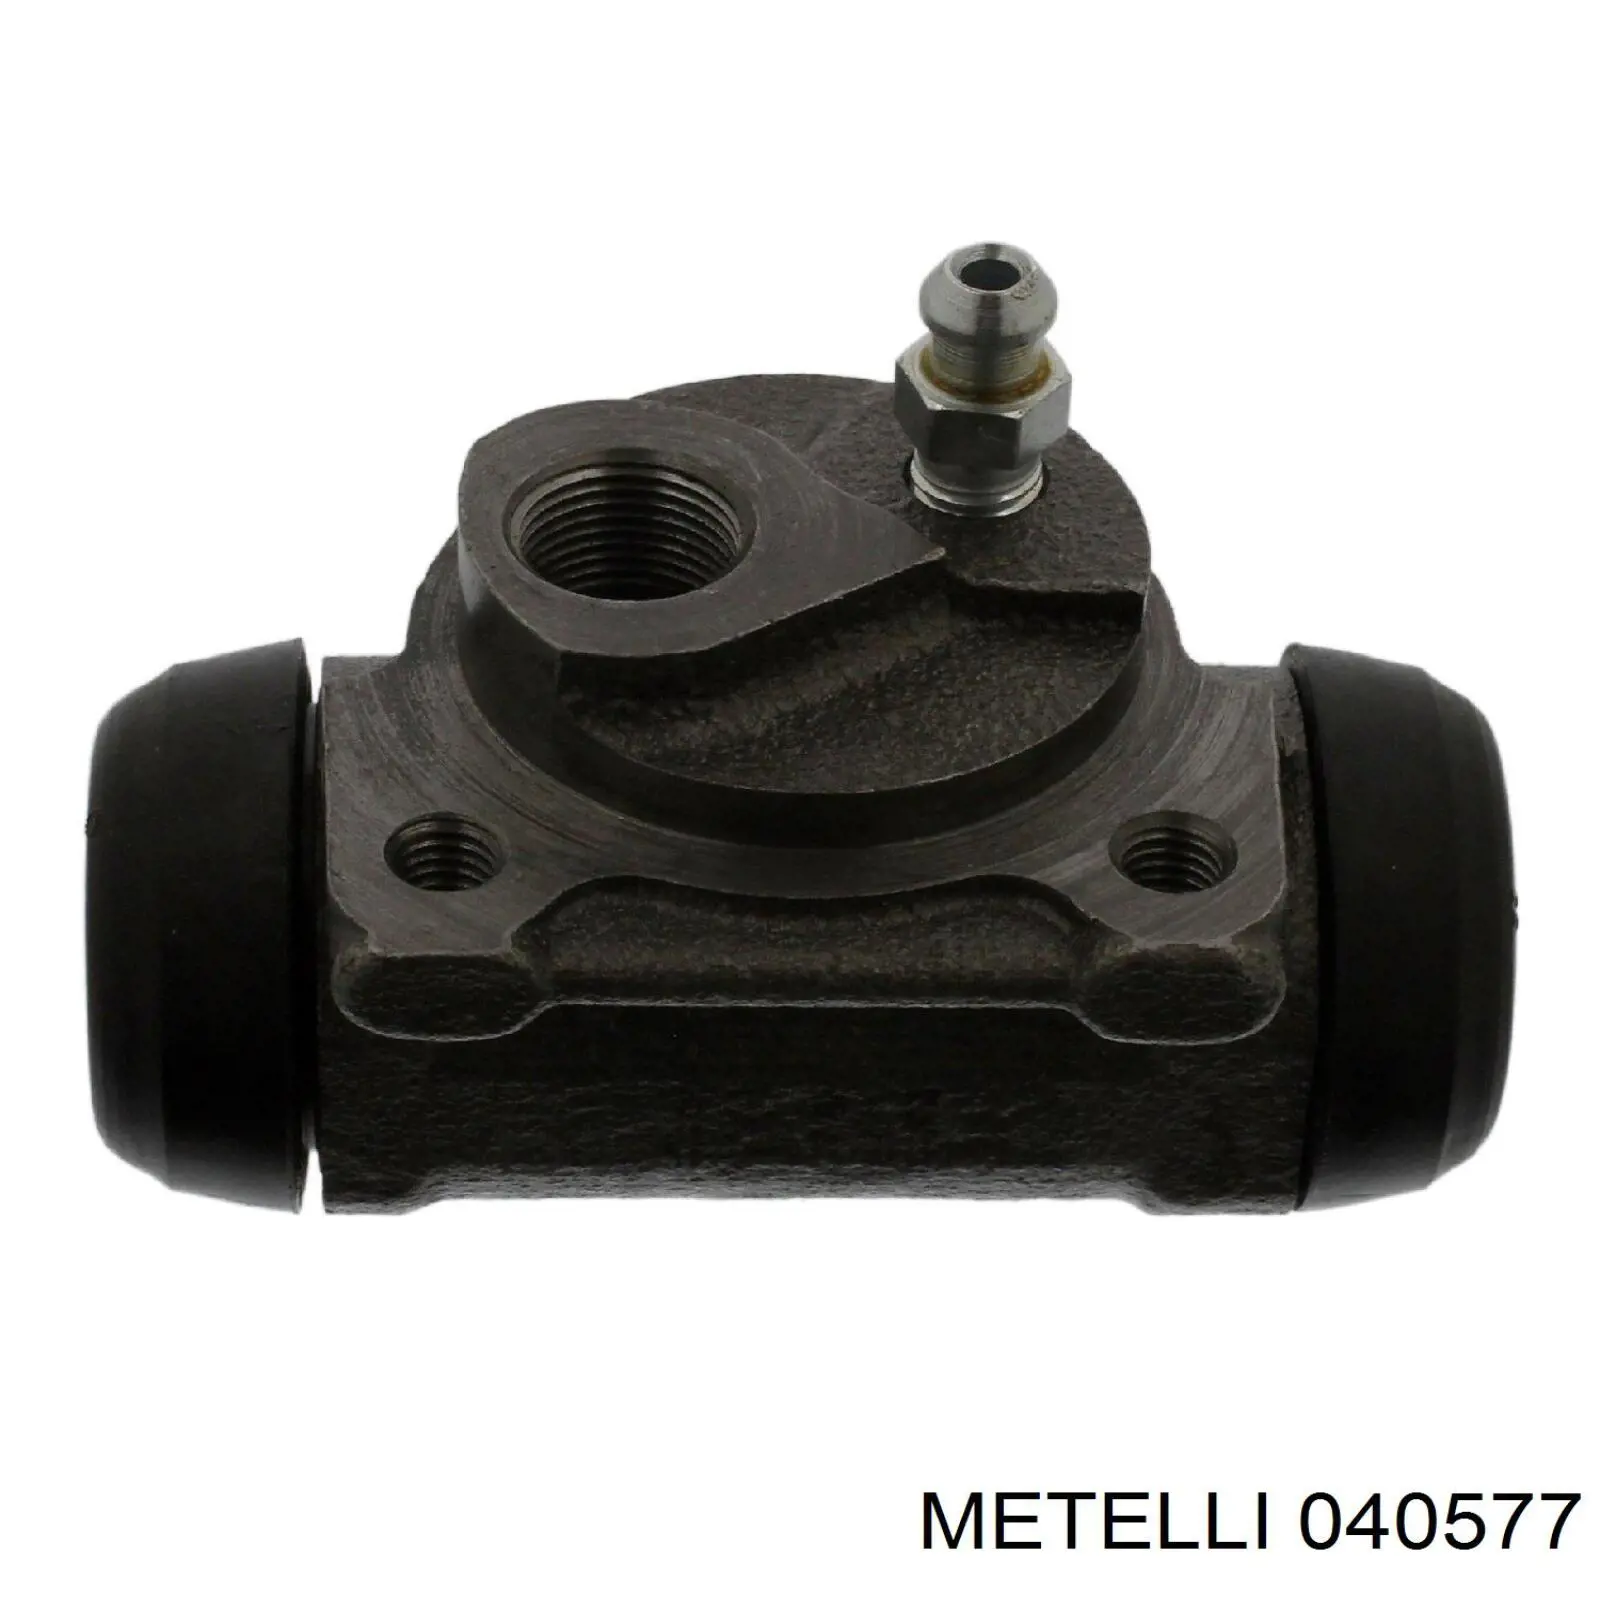 04-0577 Metelli цилиндр тормозной колесный рабочий задний